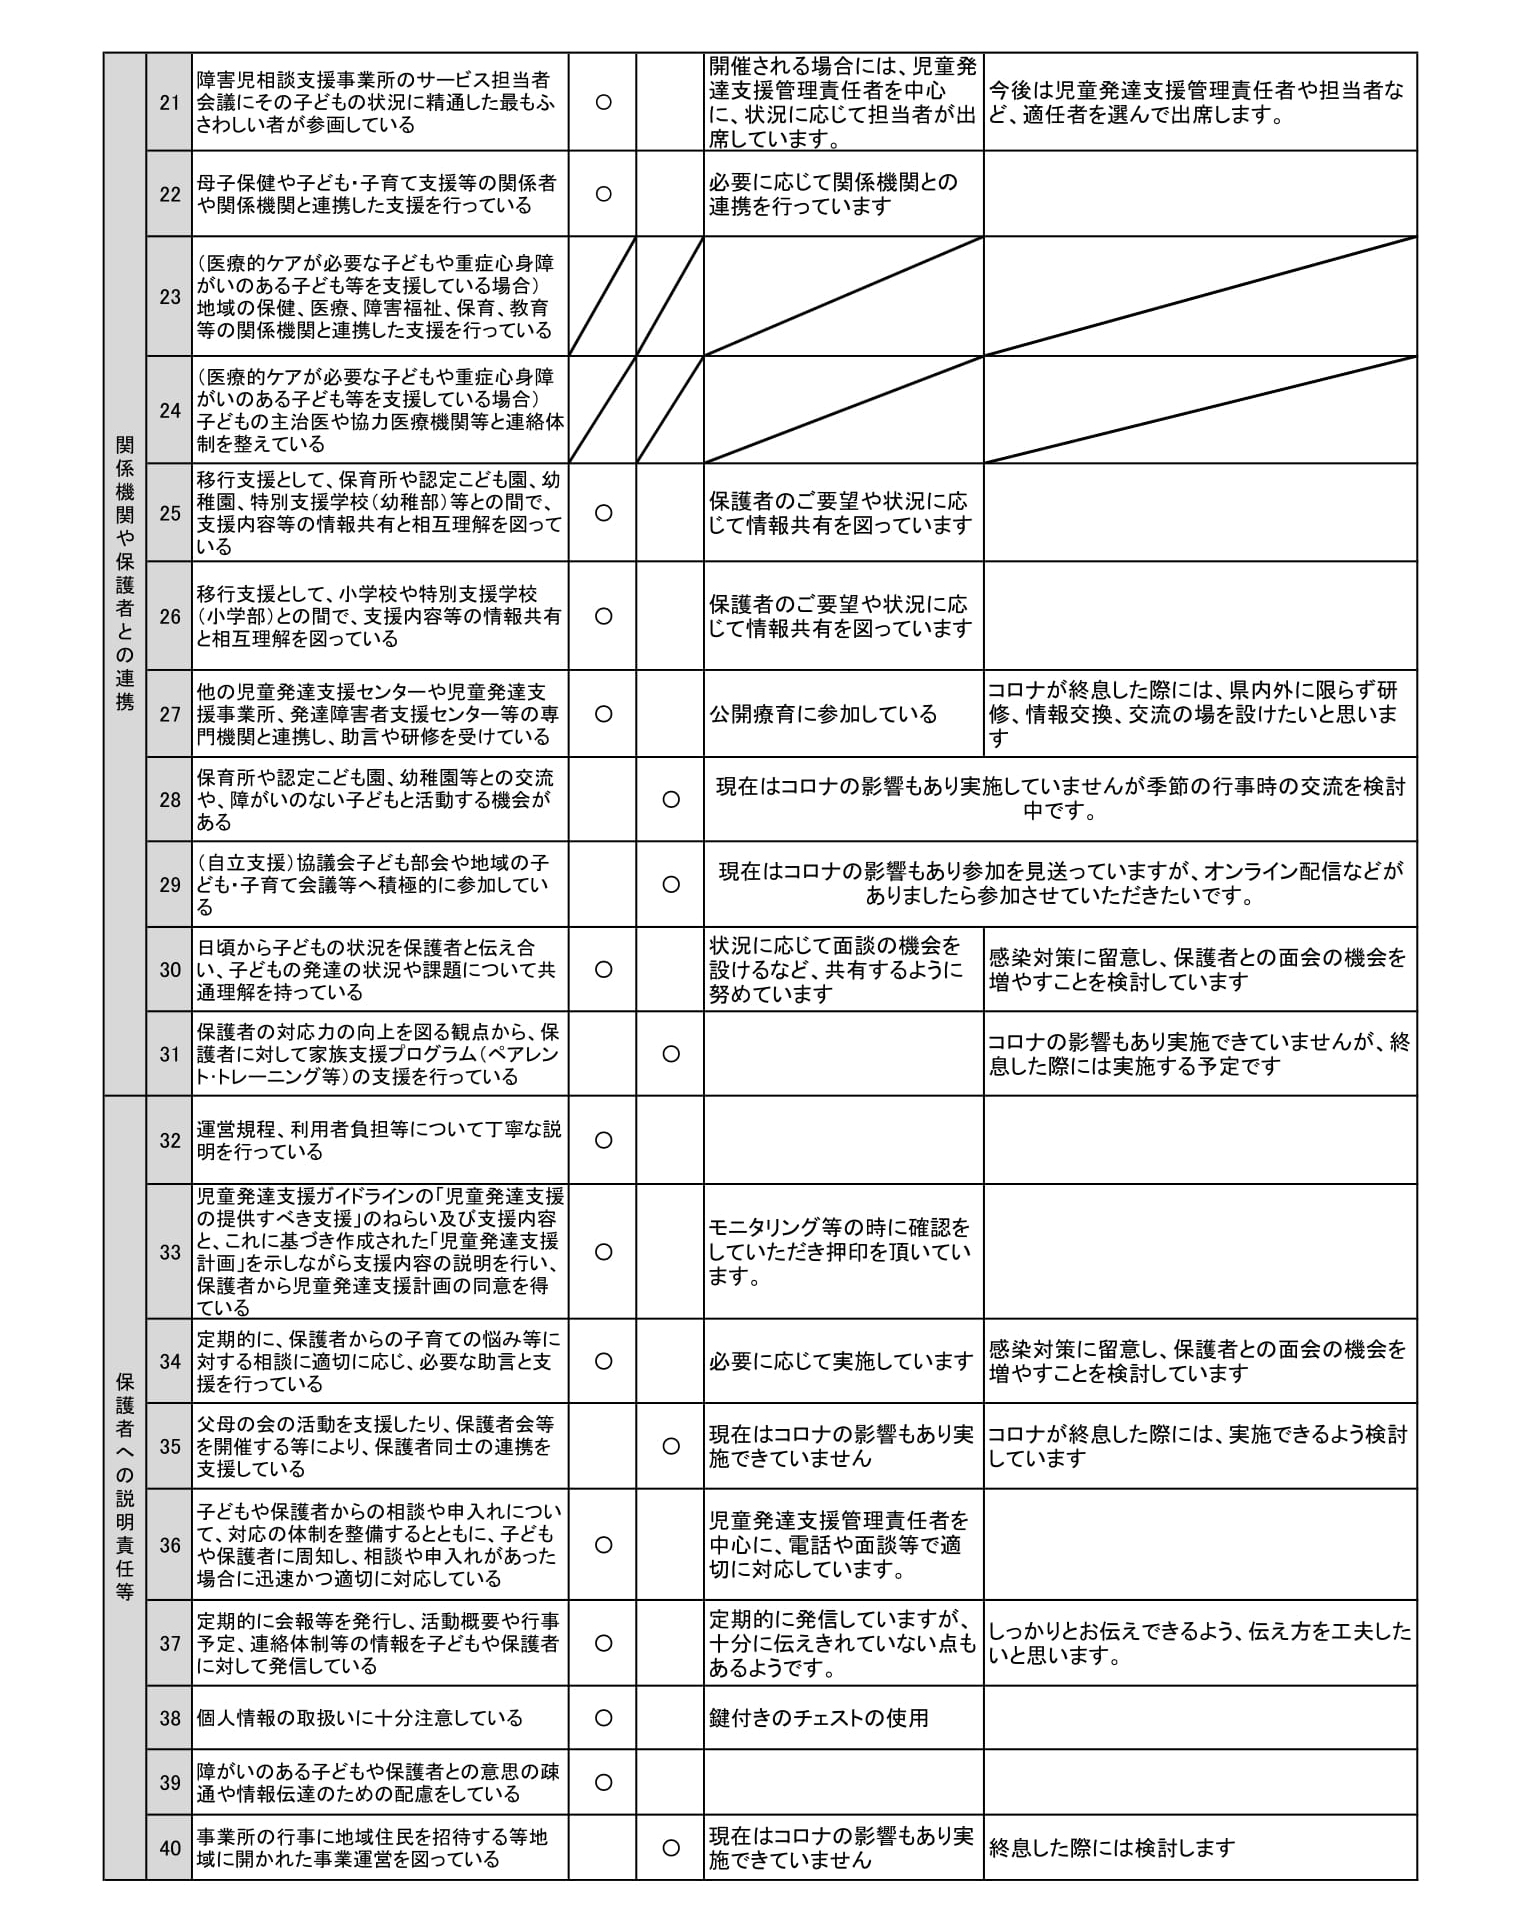 【児童発達支援】事業所における自己評価結果(sorauta.)-2